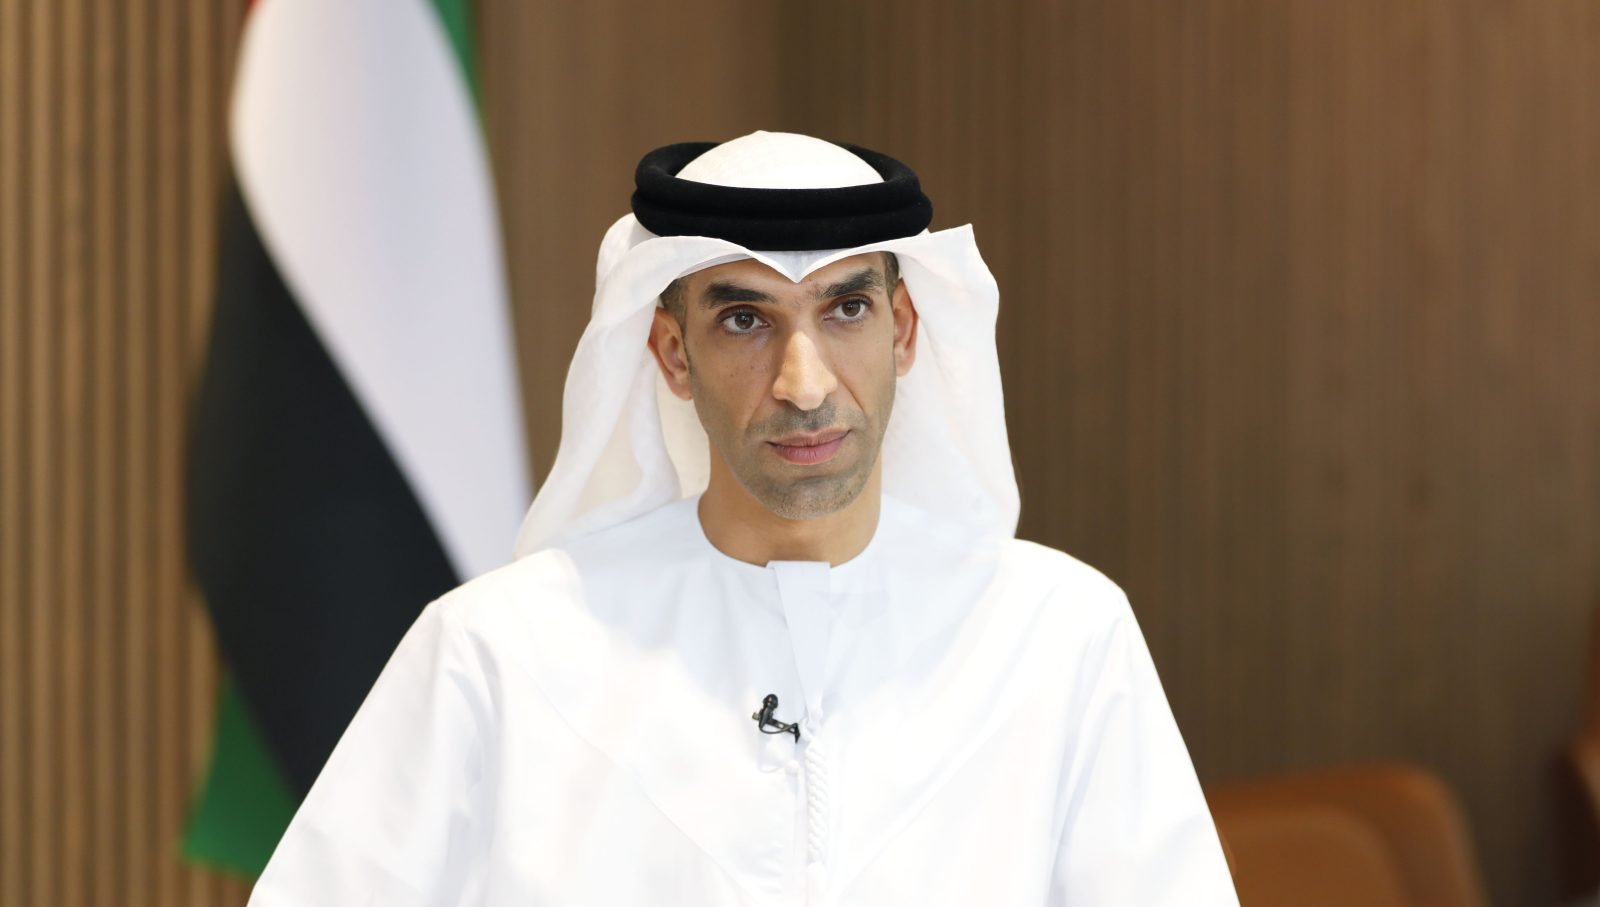 Ministro de Comercio Exterior de los EAU, Dr. Thani bin Ahmed Al Zeyoudi